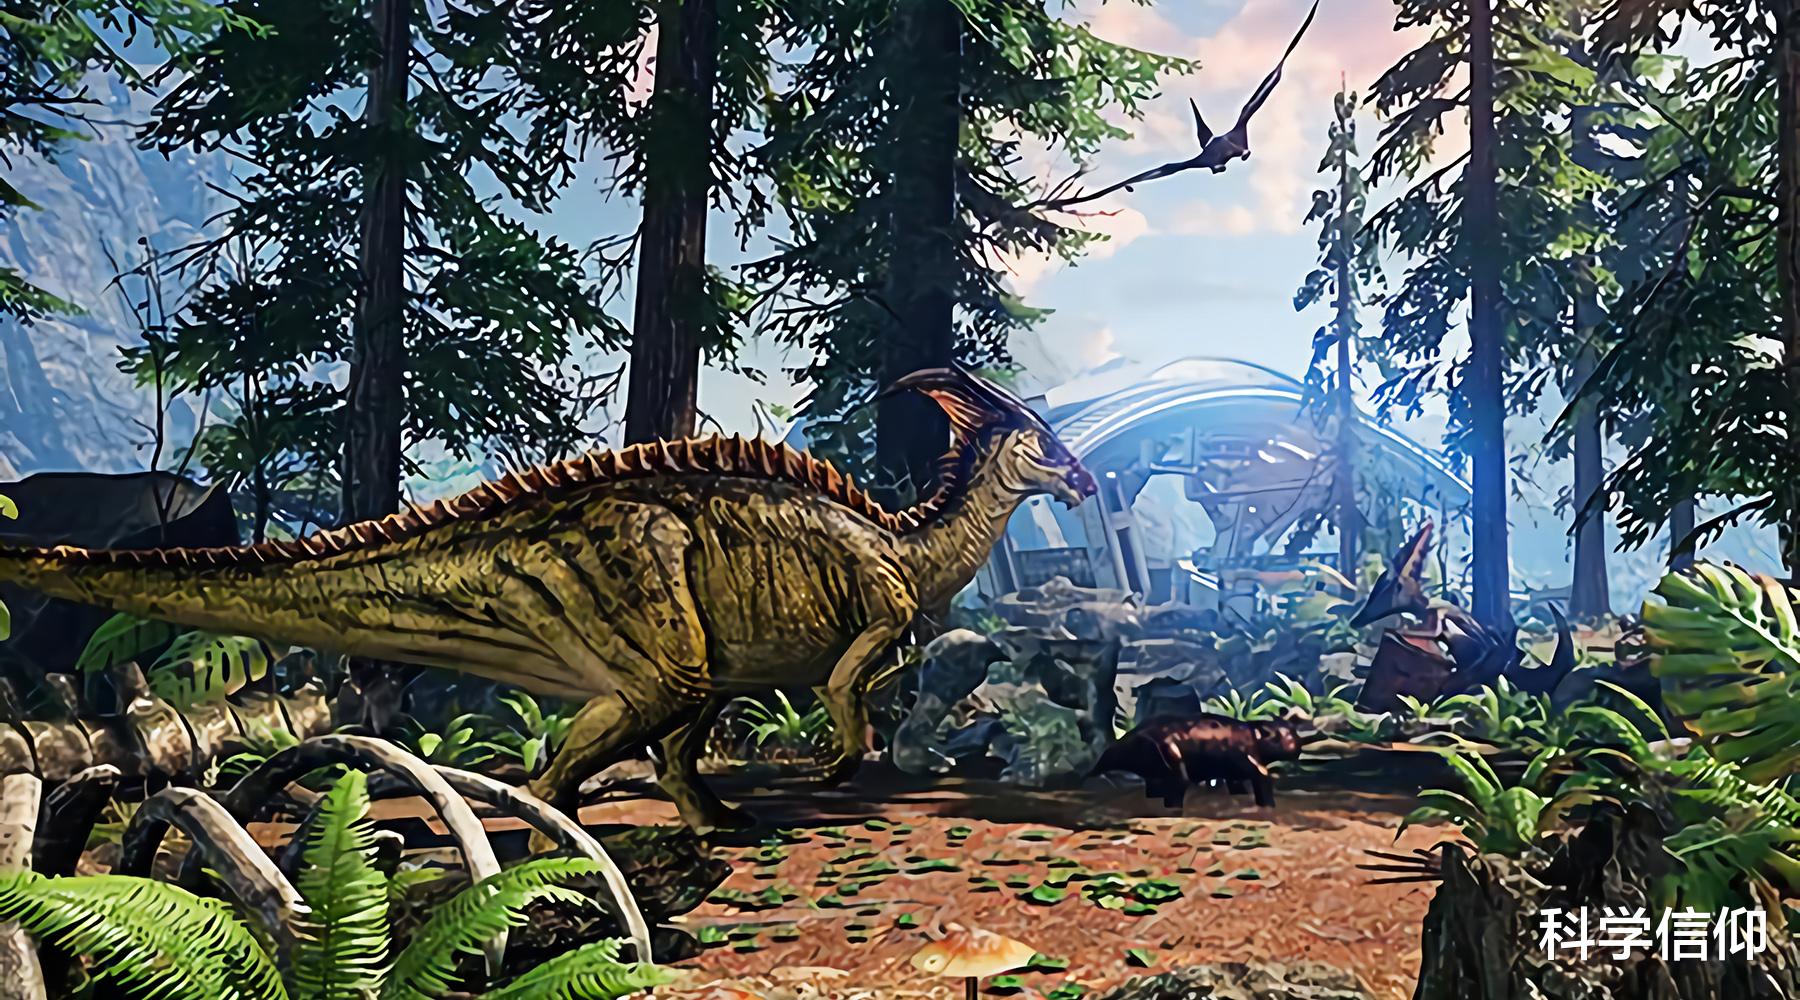 恐龙 恐龙在白垩纪真能横行无阻吗？并不能，即便是暴龙科恐龙也有天敌